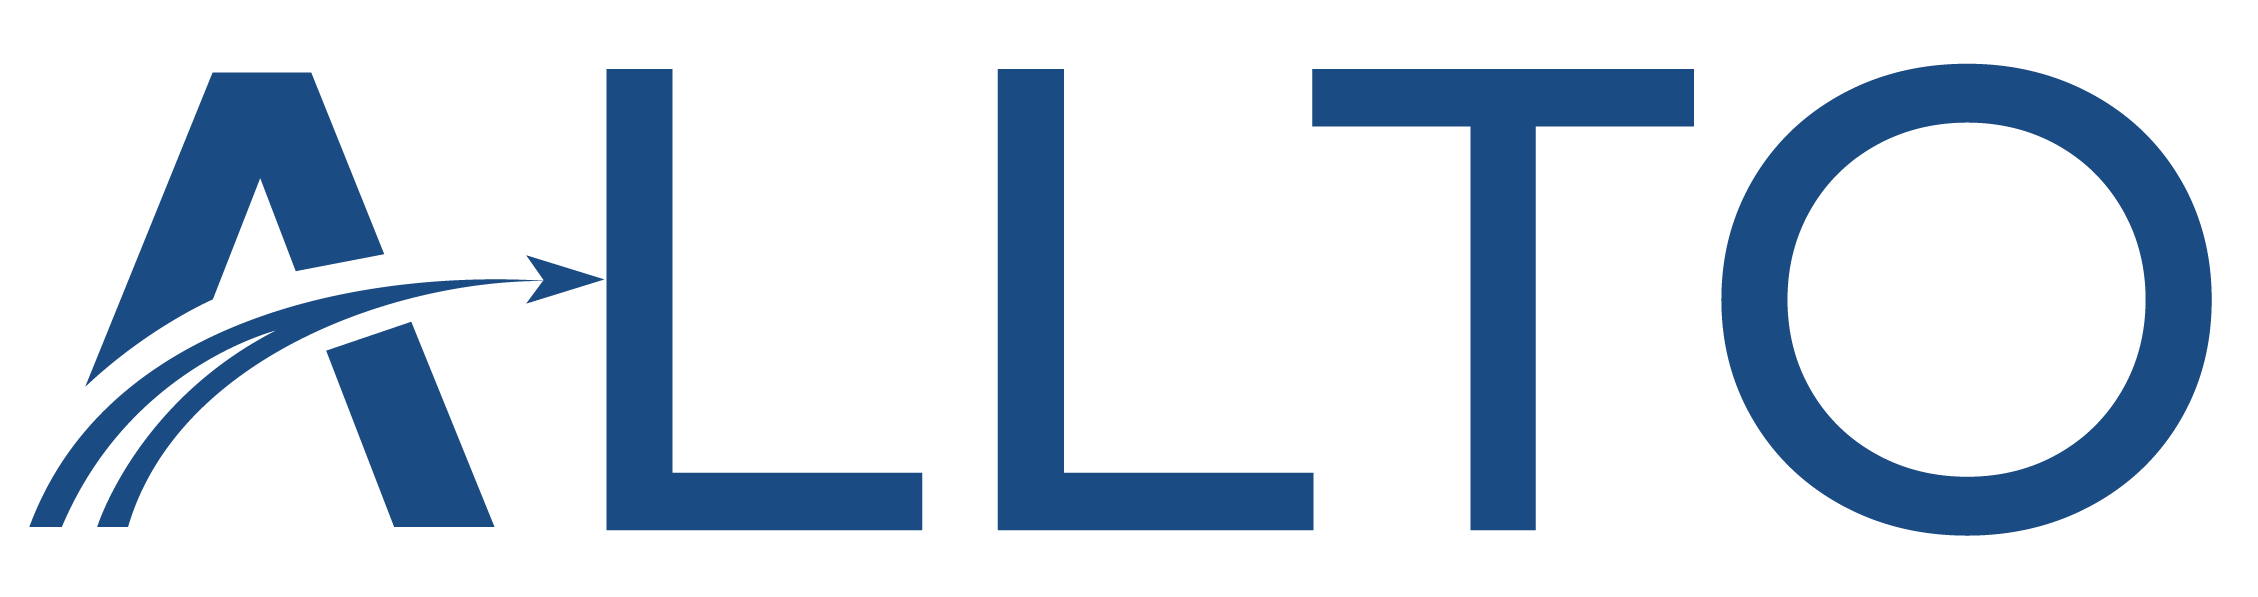 allplantools logo - allto software